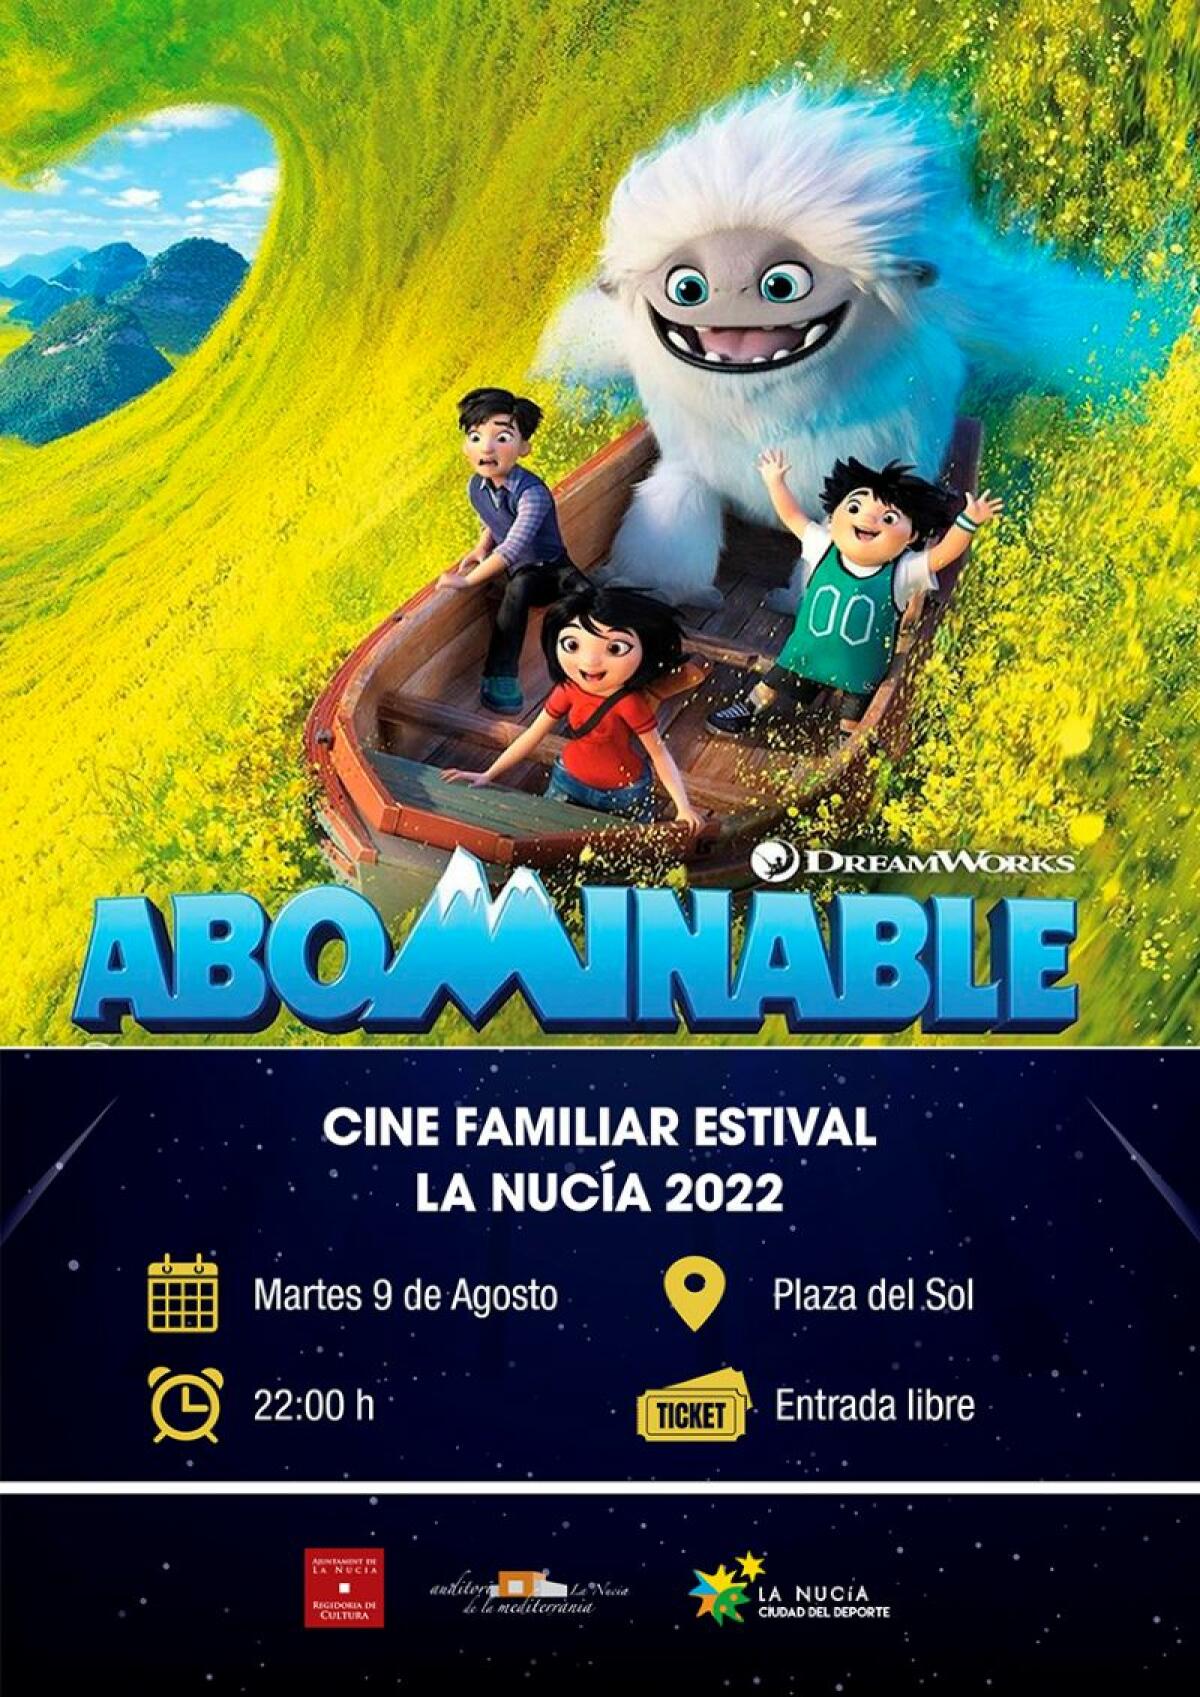 Mañana la película “Abominable” en la plaza del Sol  